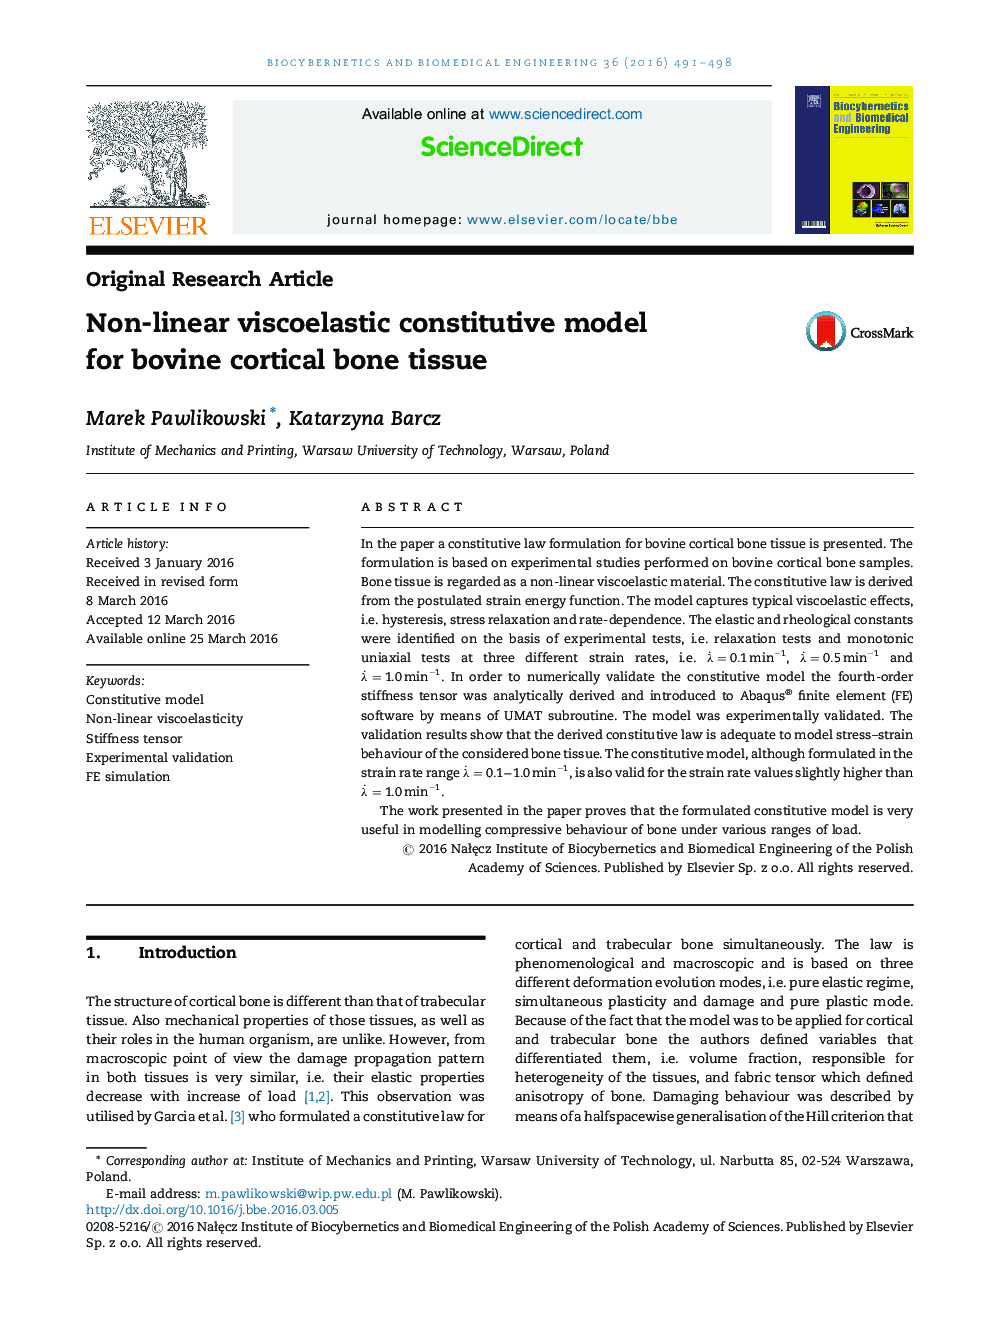 Non-linear viscoelastic constitutive model for bovine cortical bone tissue